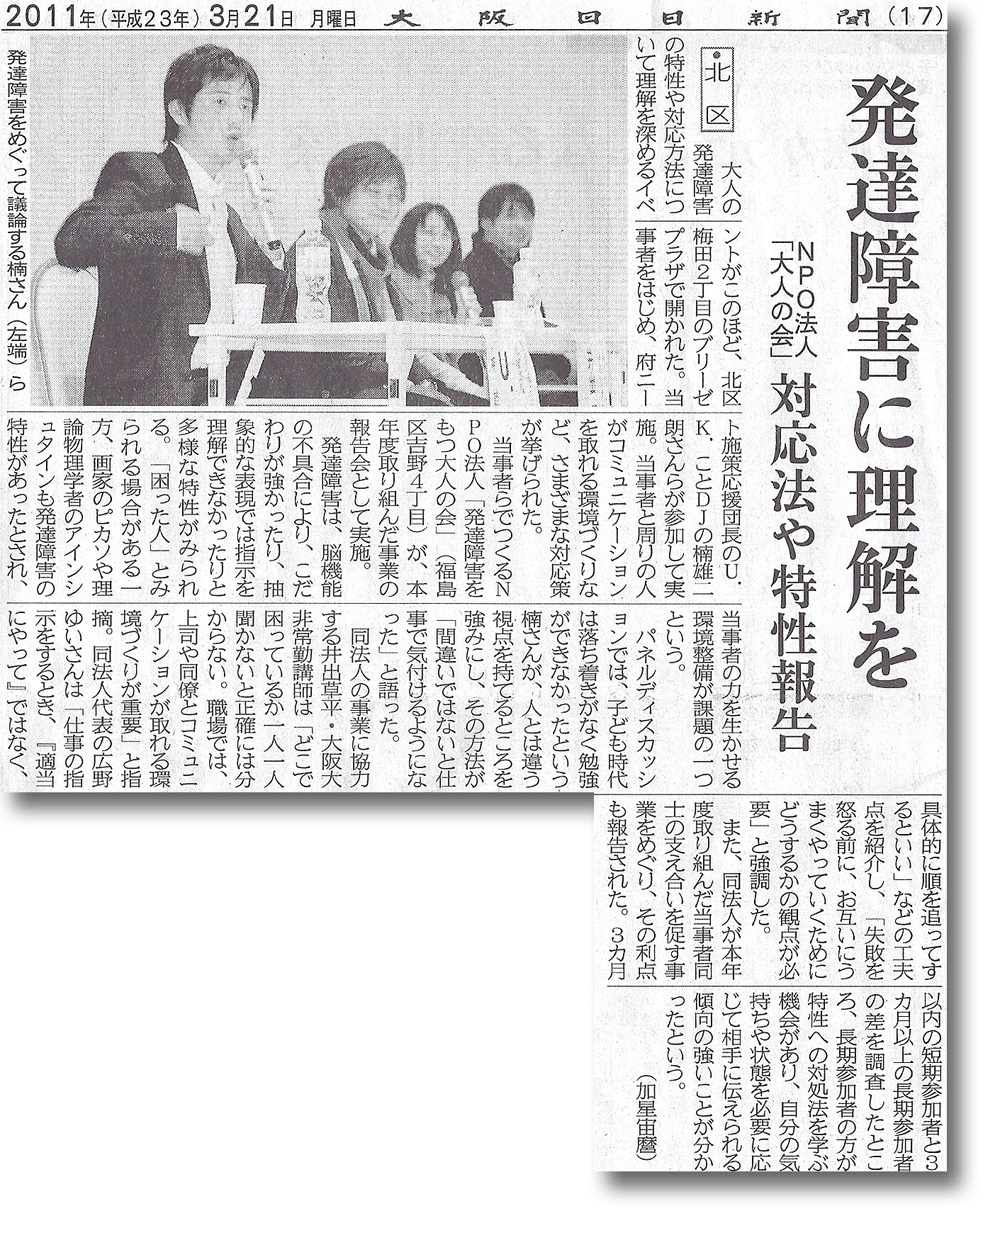 大阪日日新聞 2011年3月21日付朝刊記事